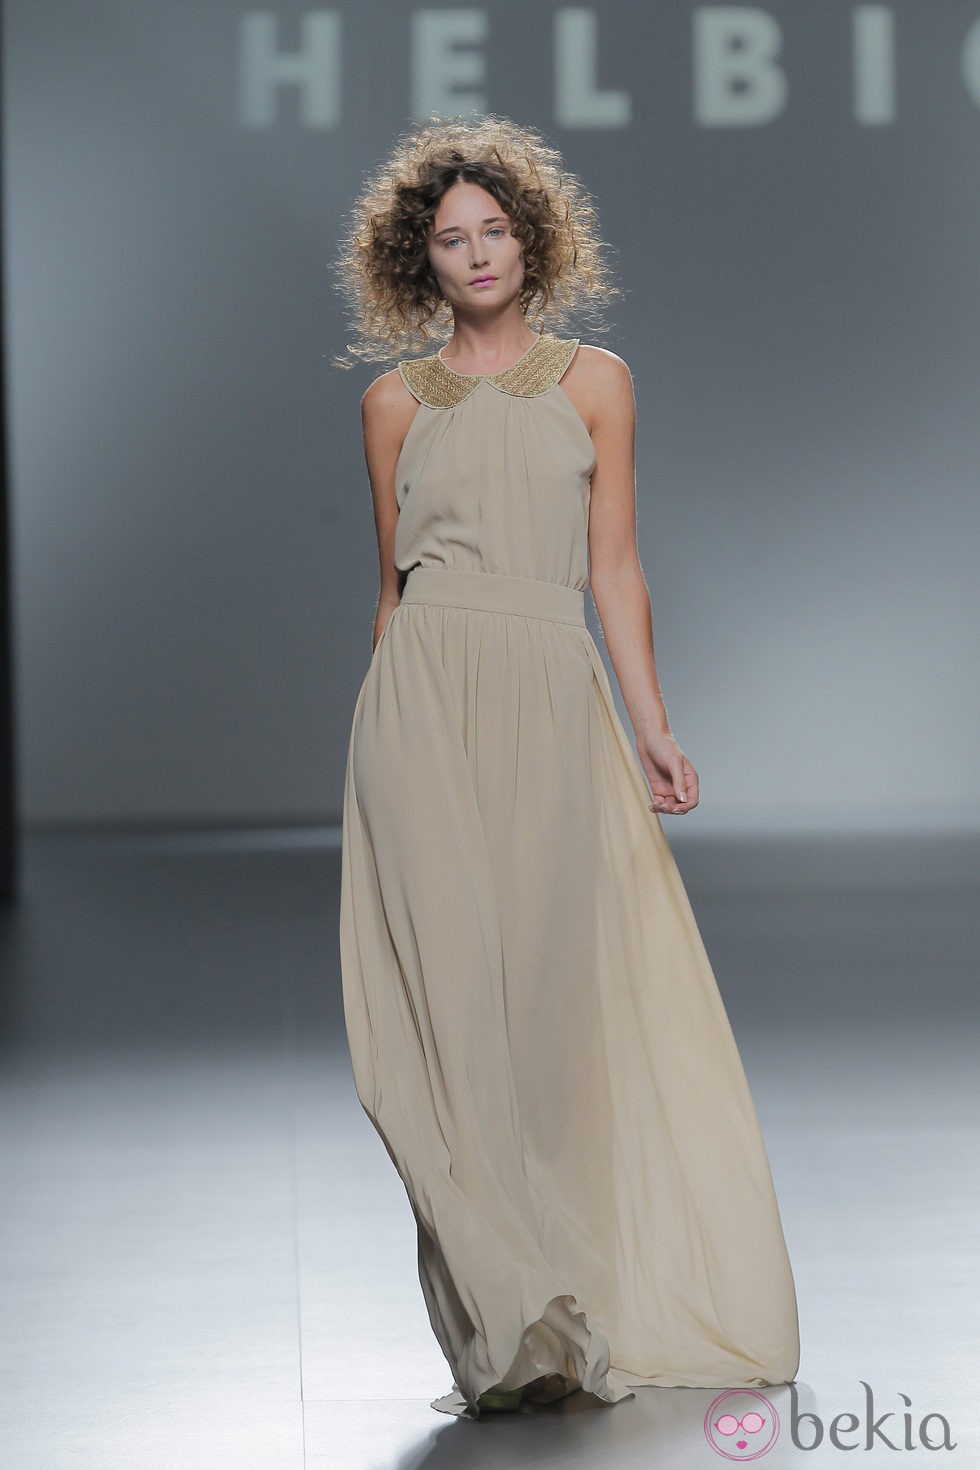 Vestido largo de Teresa Helbig, colección primavera/verano 2013